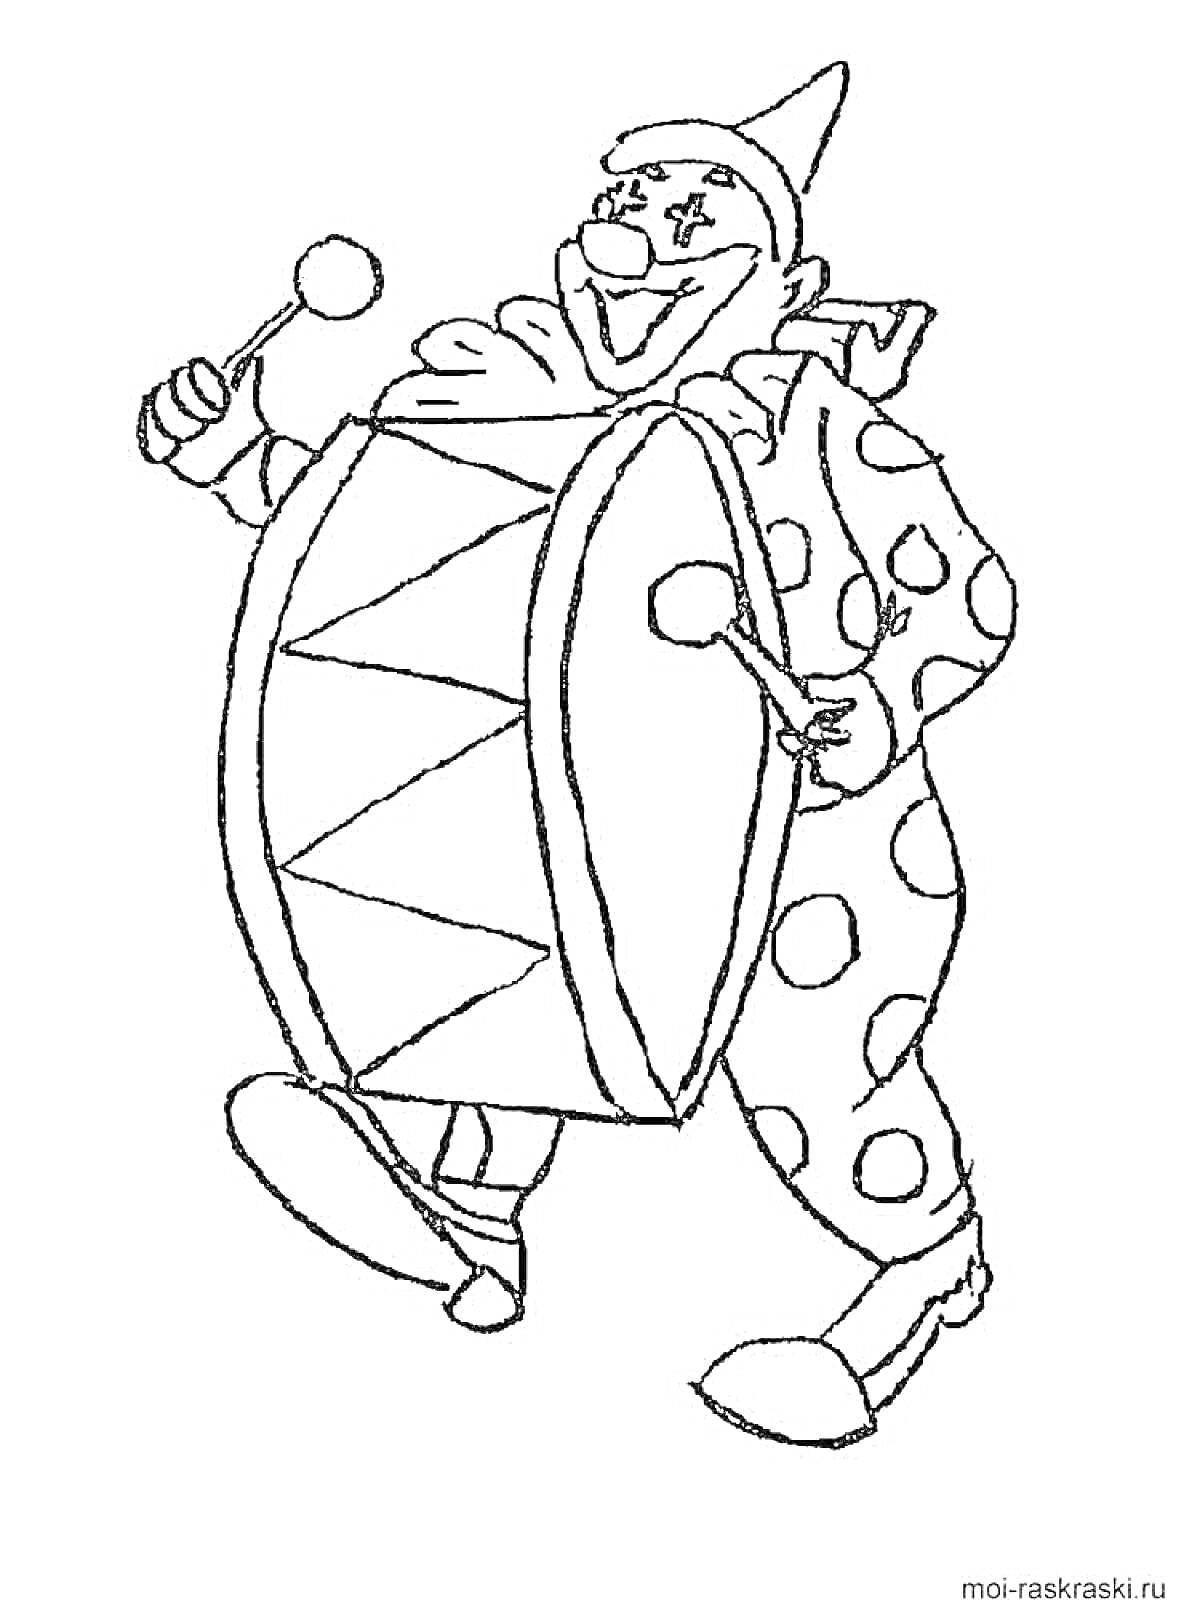 Раскраска Клоун с барабаном и палочками для барабана